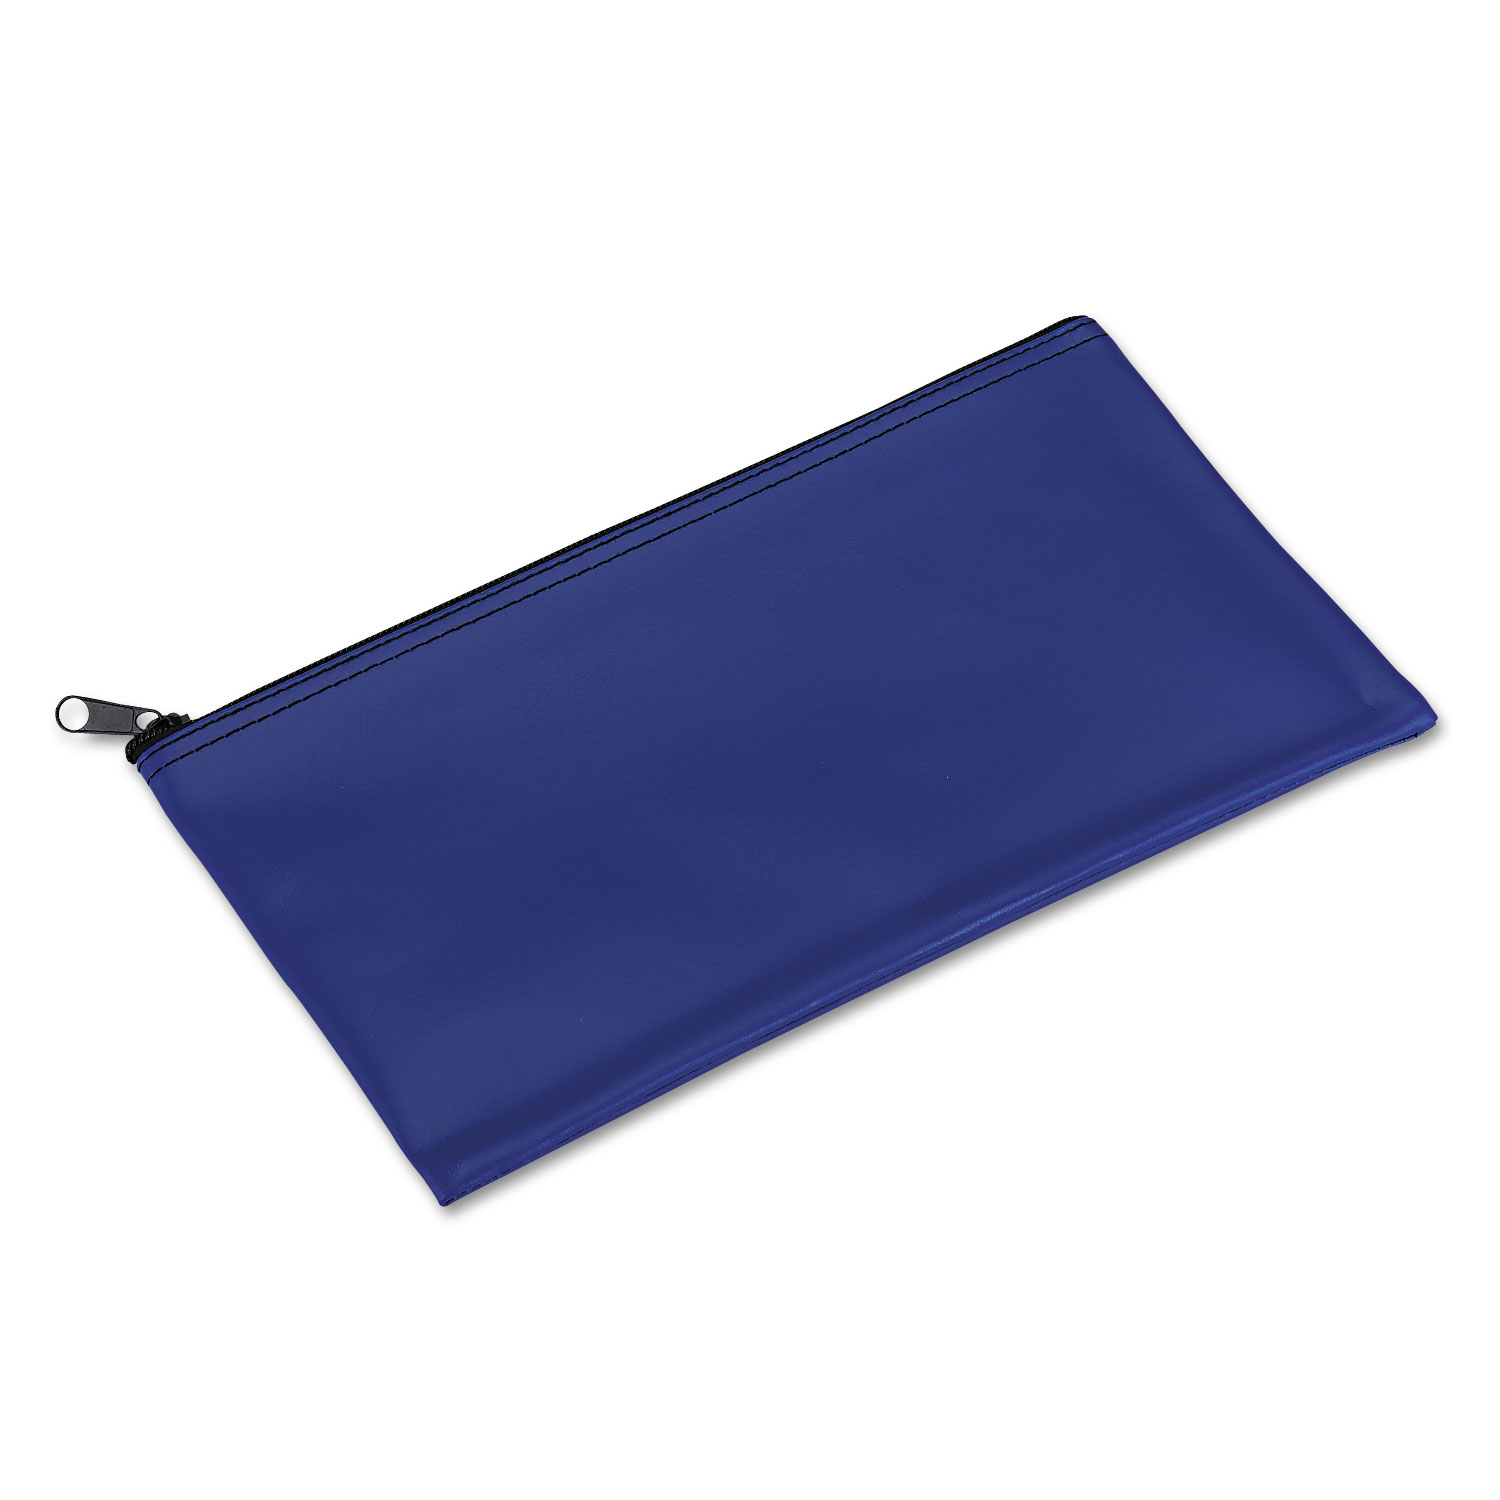  Iconex PMF04620 Bank Deposit/Utility Zipper Bag, Cash/Documents, Vinyl, 11 x 6, Blue (PMC04620) 